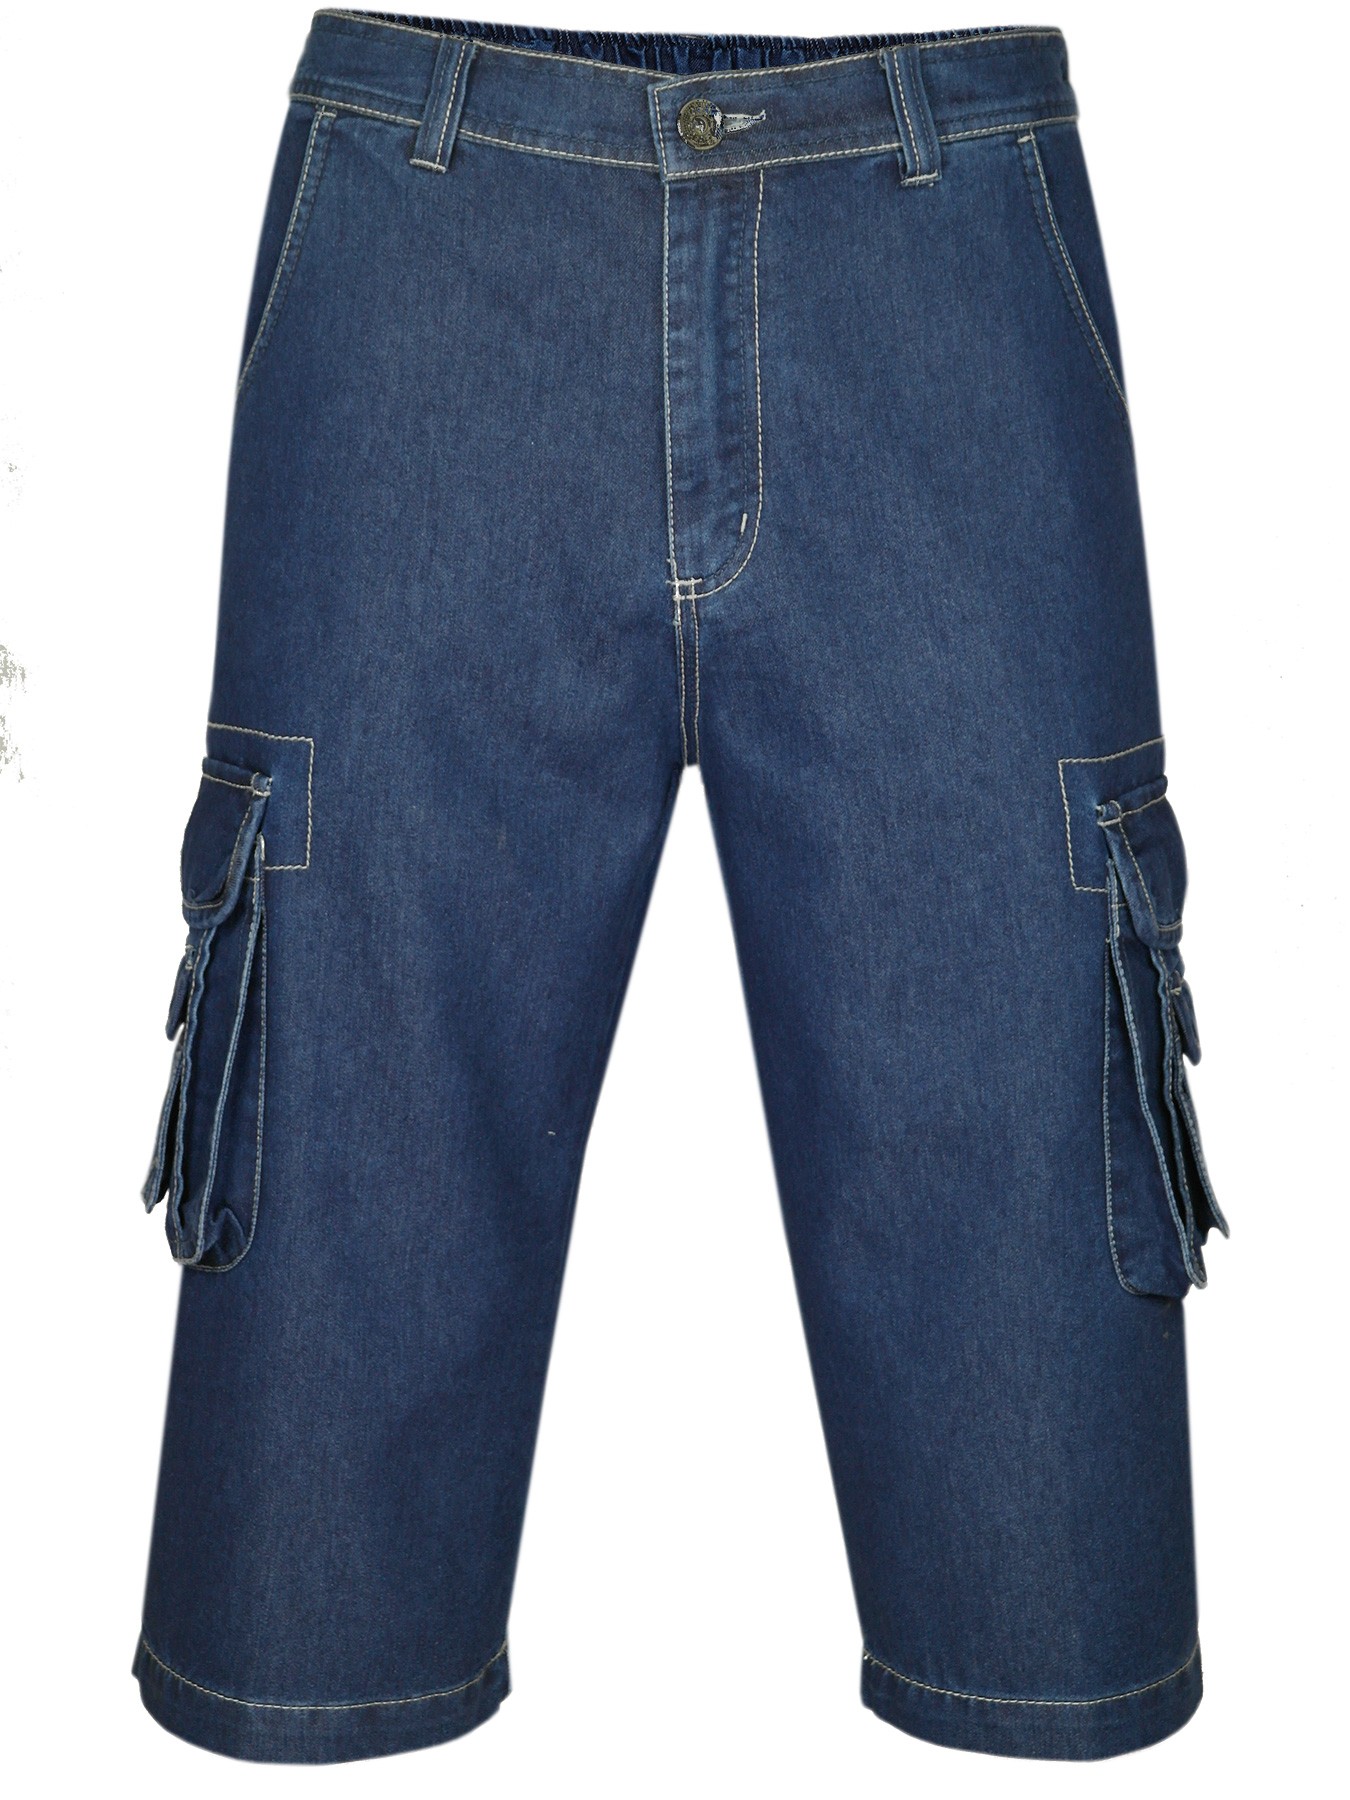 Herren Shorts Jeans Bermuda mit Cargotaschen